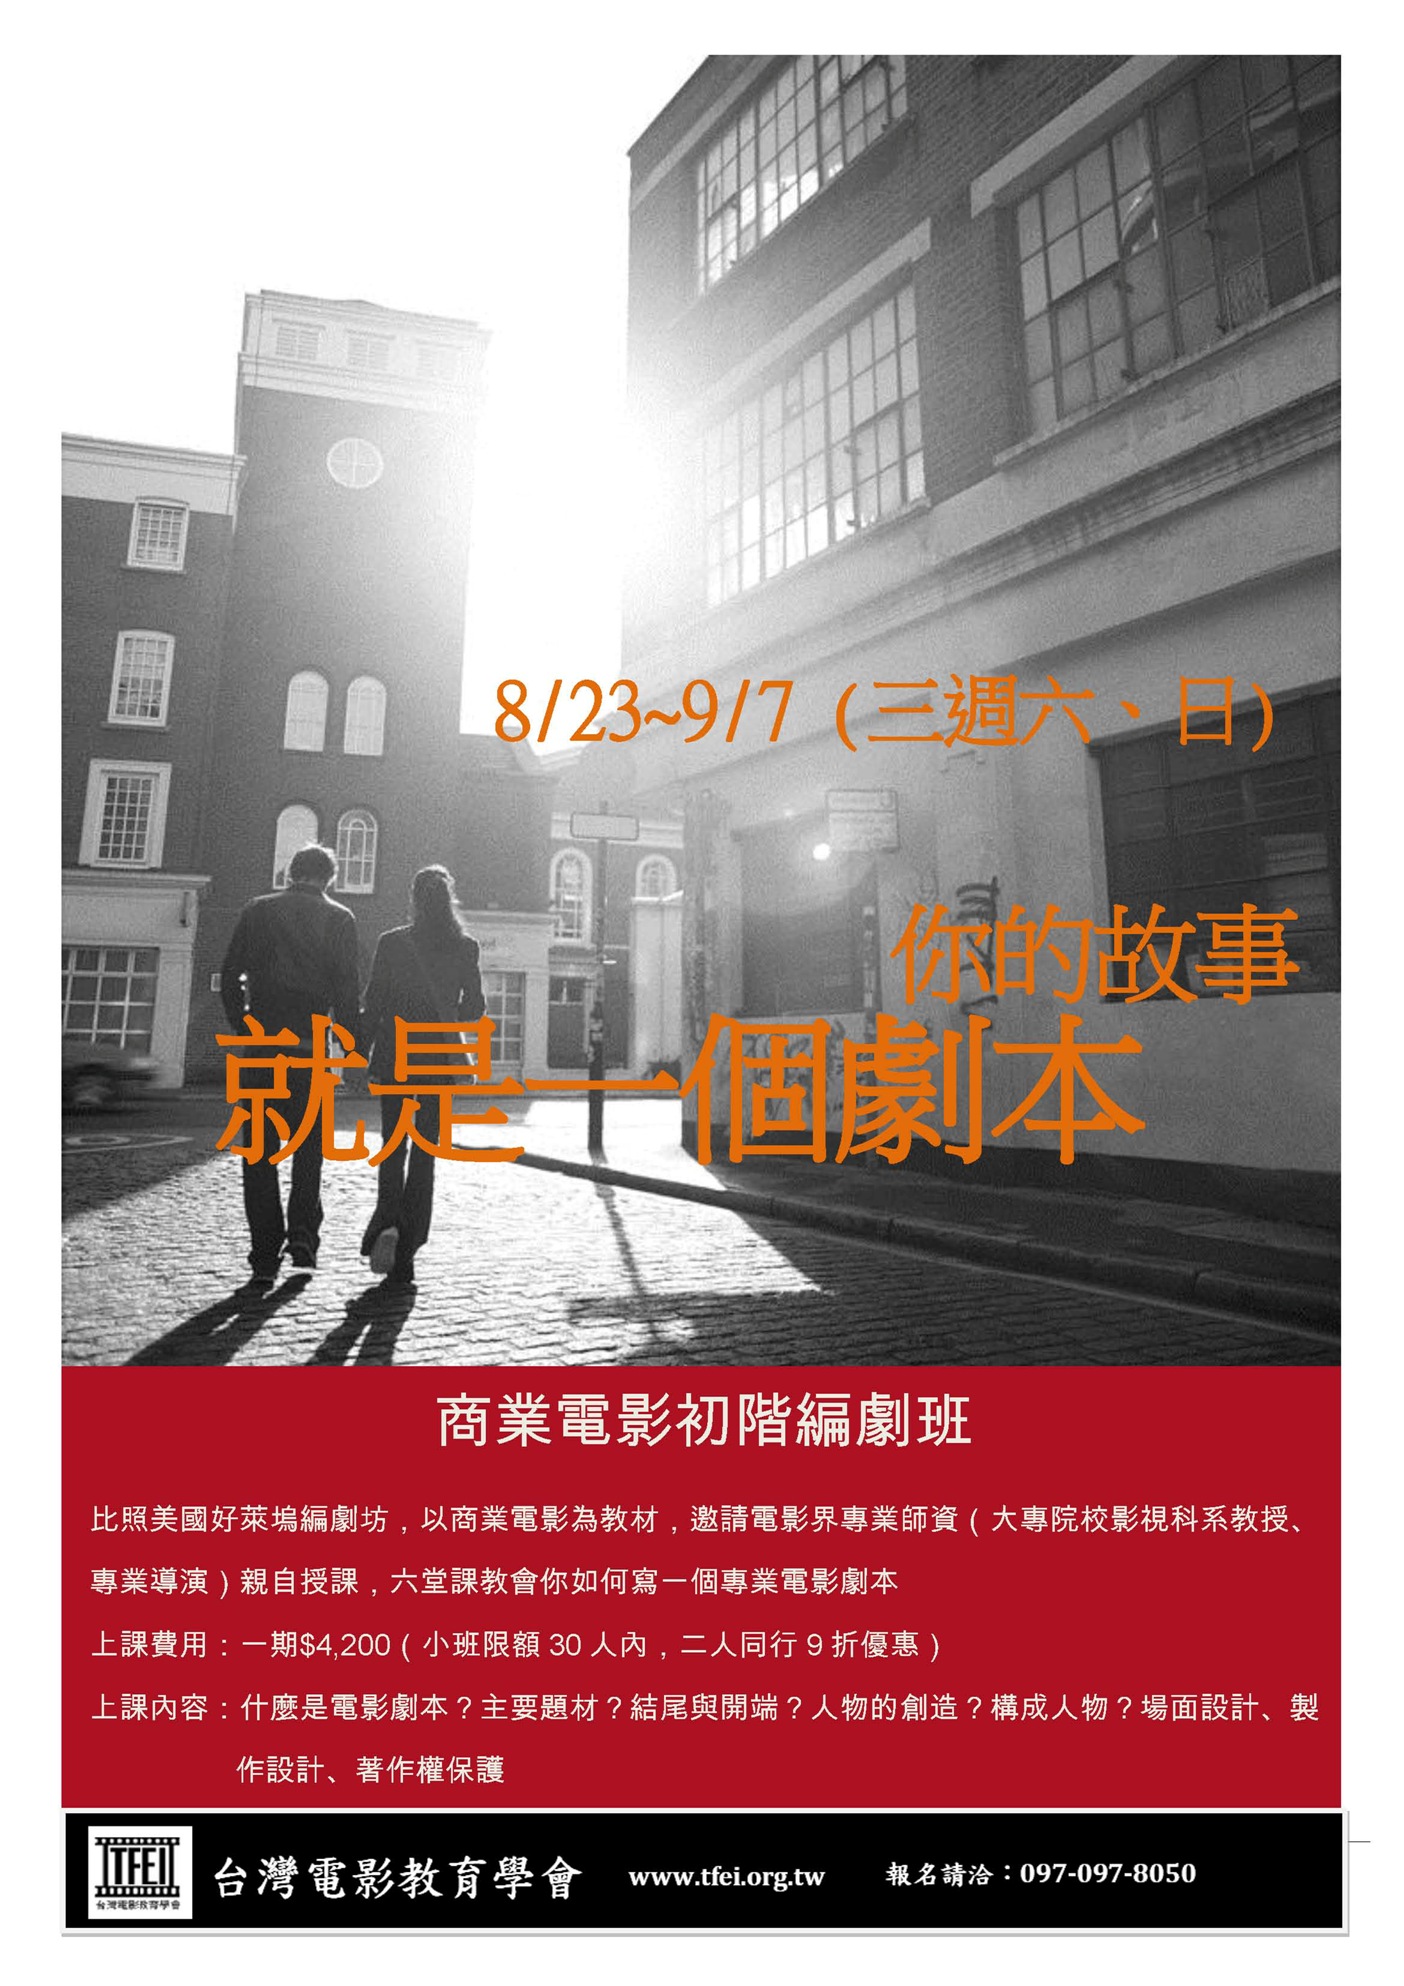 台灣電影教育學會「八月份商業電影編劇初階班課程」開始報名中!!